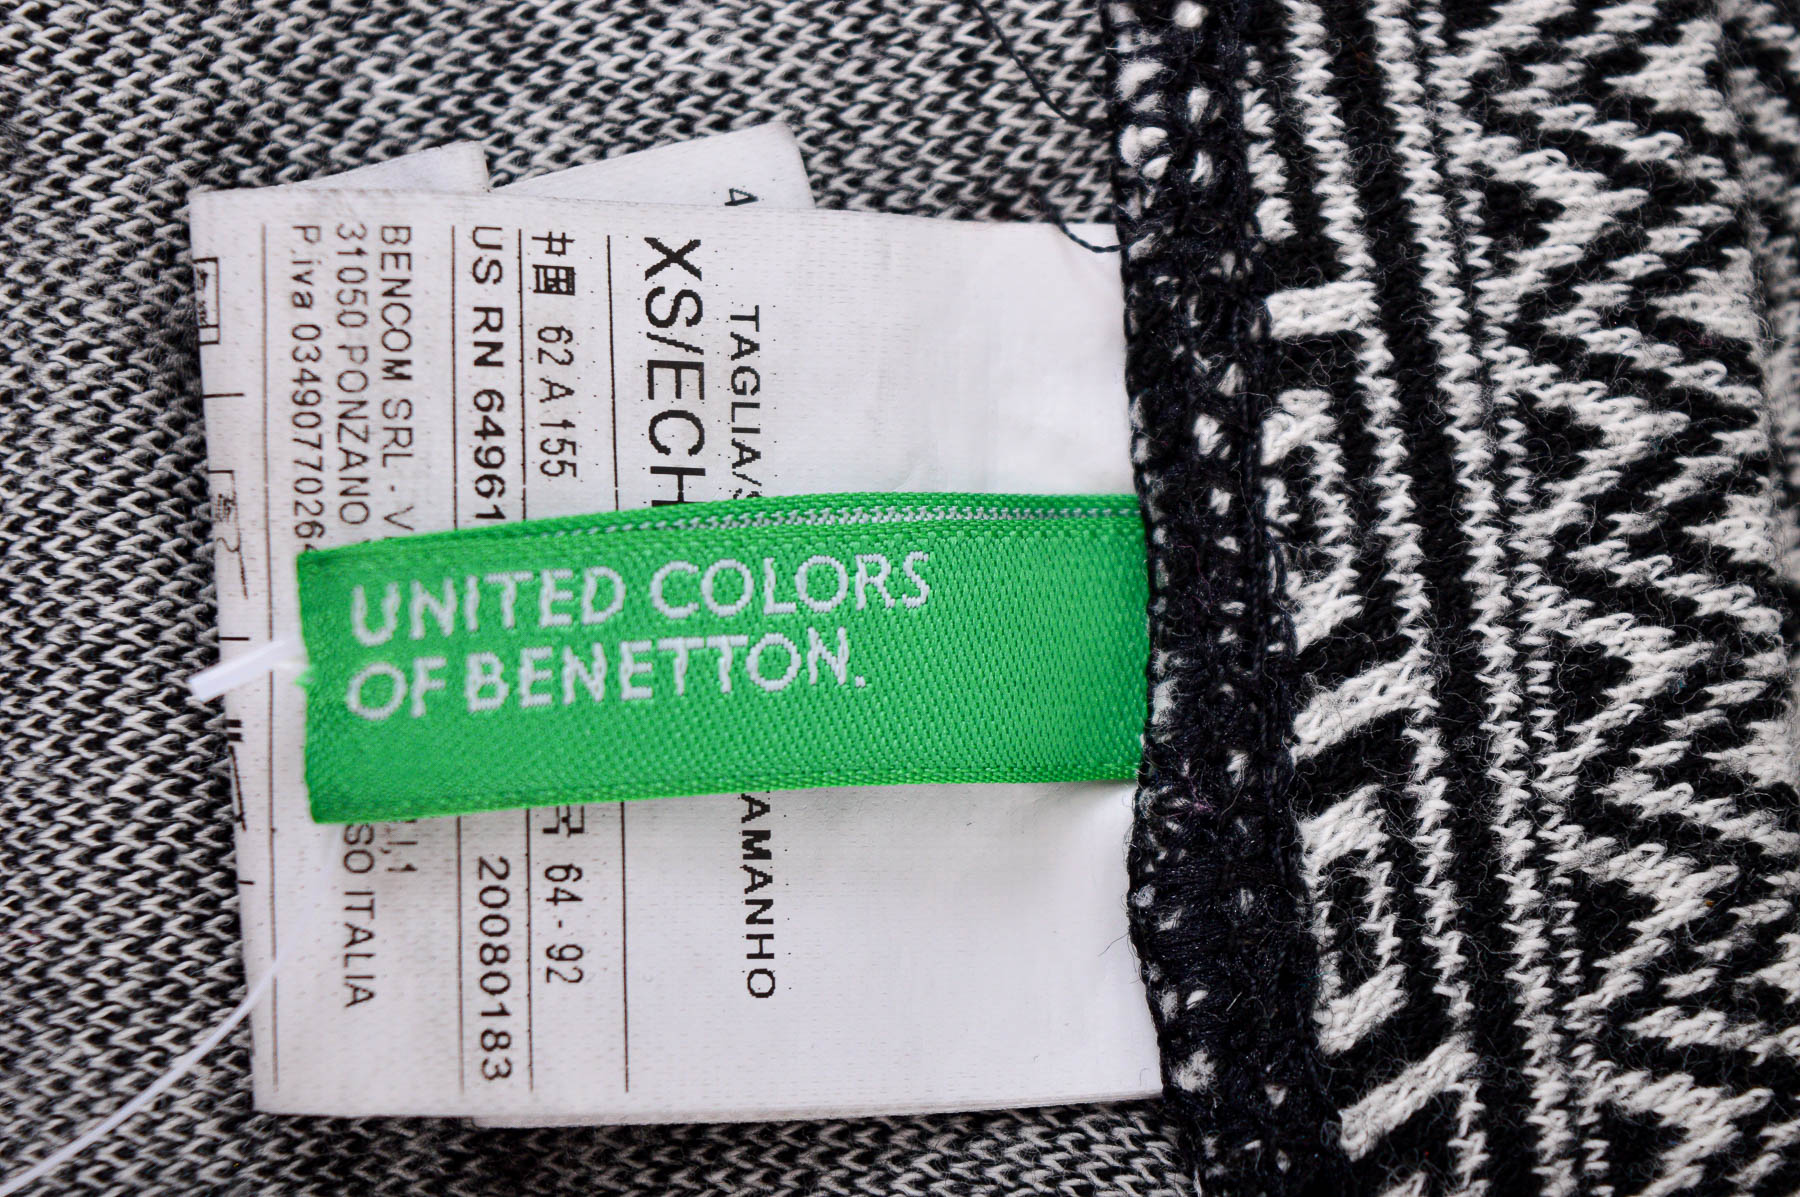 Skirt - United Colors of Benetton - 2